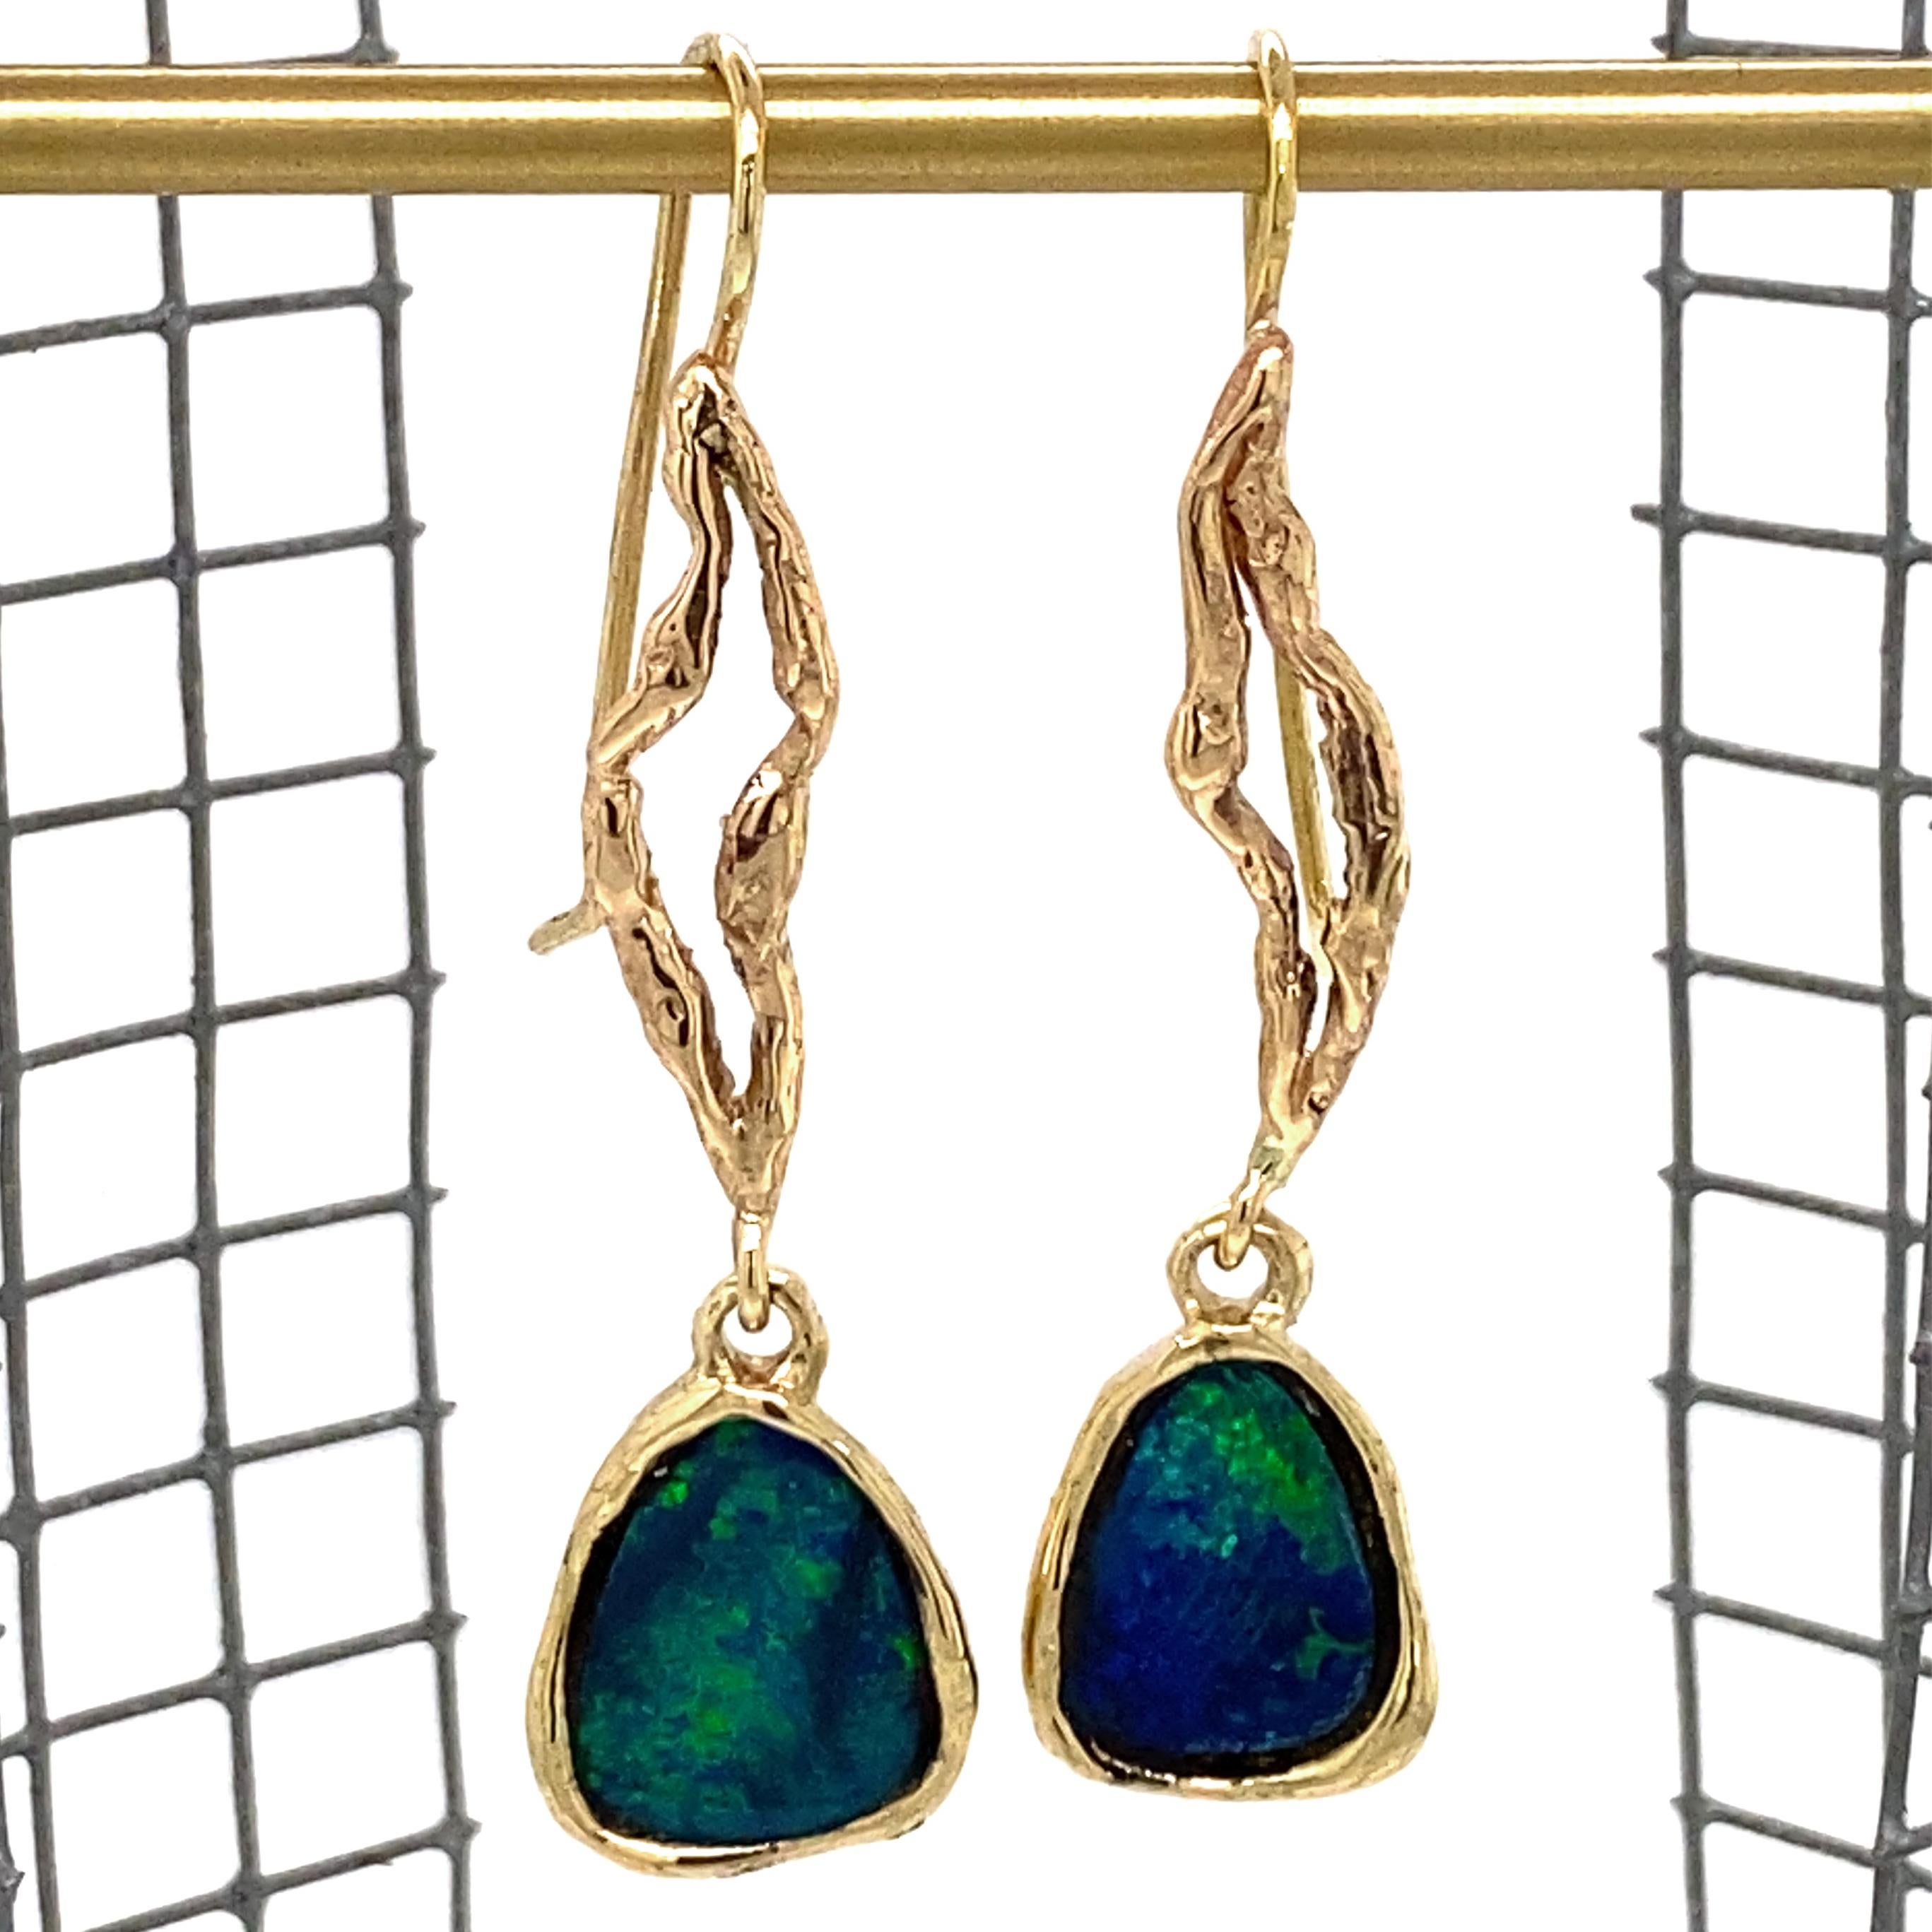 Deux opales de roche australiennes flamboyantes semblent couler sur des fils d'or pour créer une paire de nouvelles boucles d'oreilles d'Eytan Brandes.

Chaque opale est enchâssée dans une monture à lunette ouverte et suspendue à une 